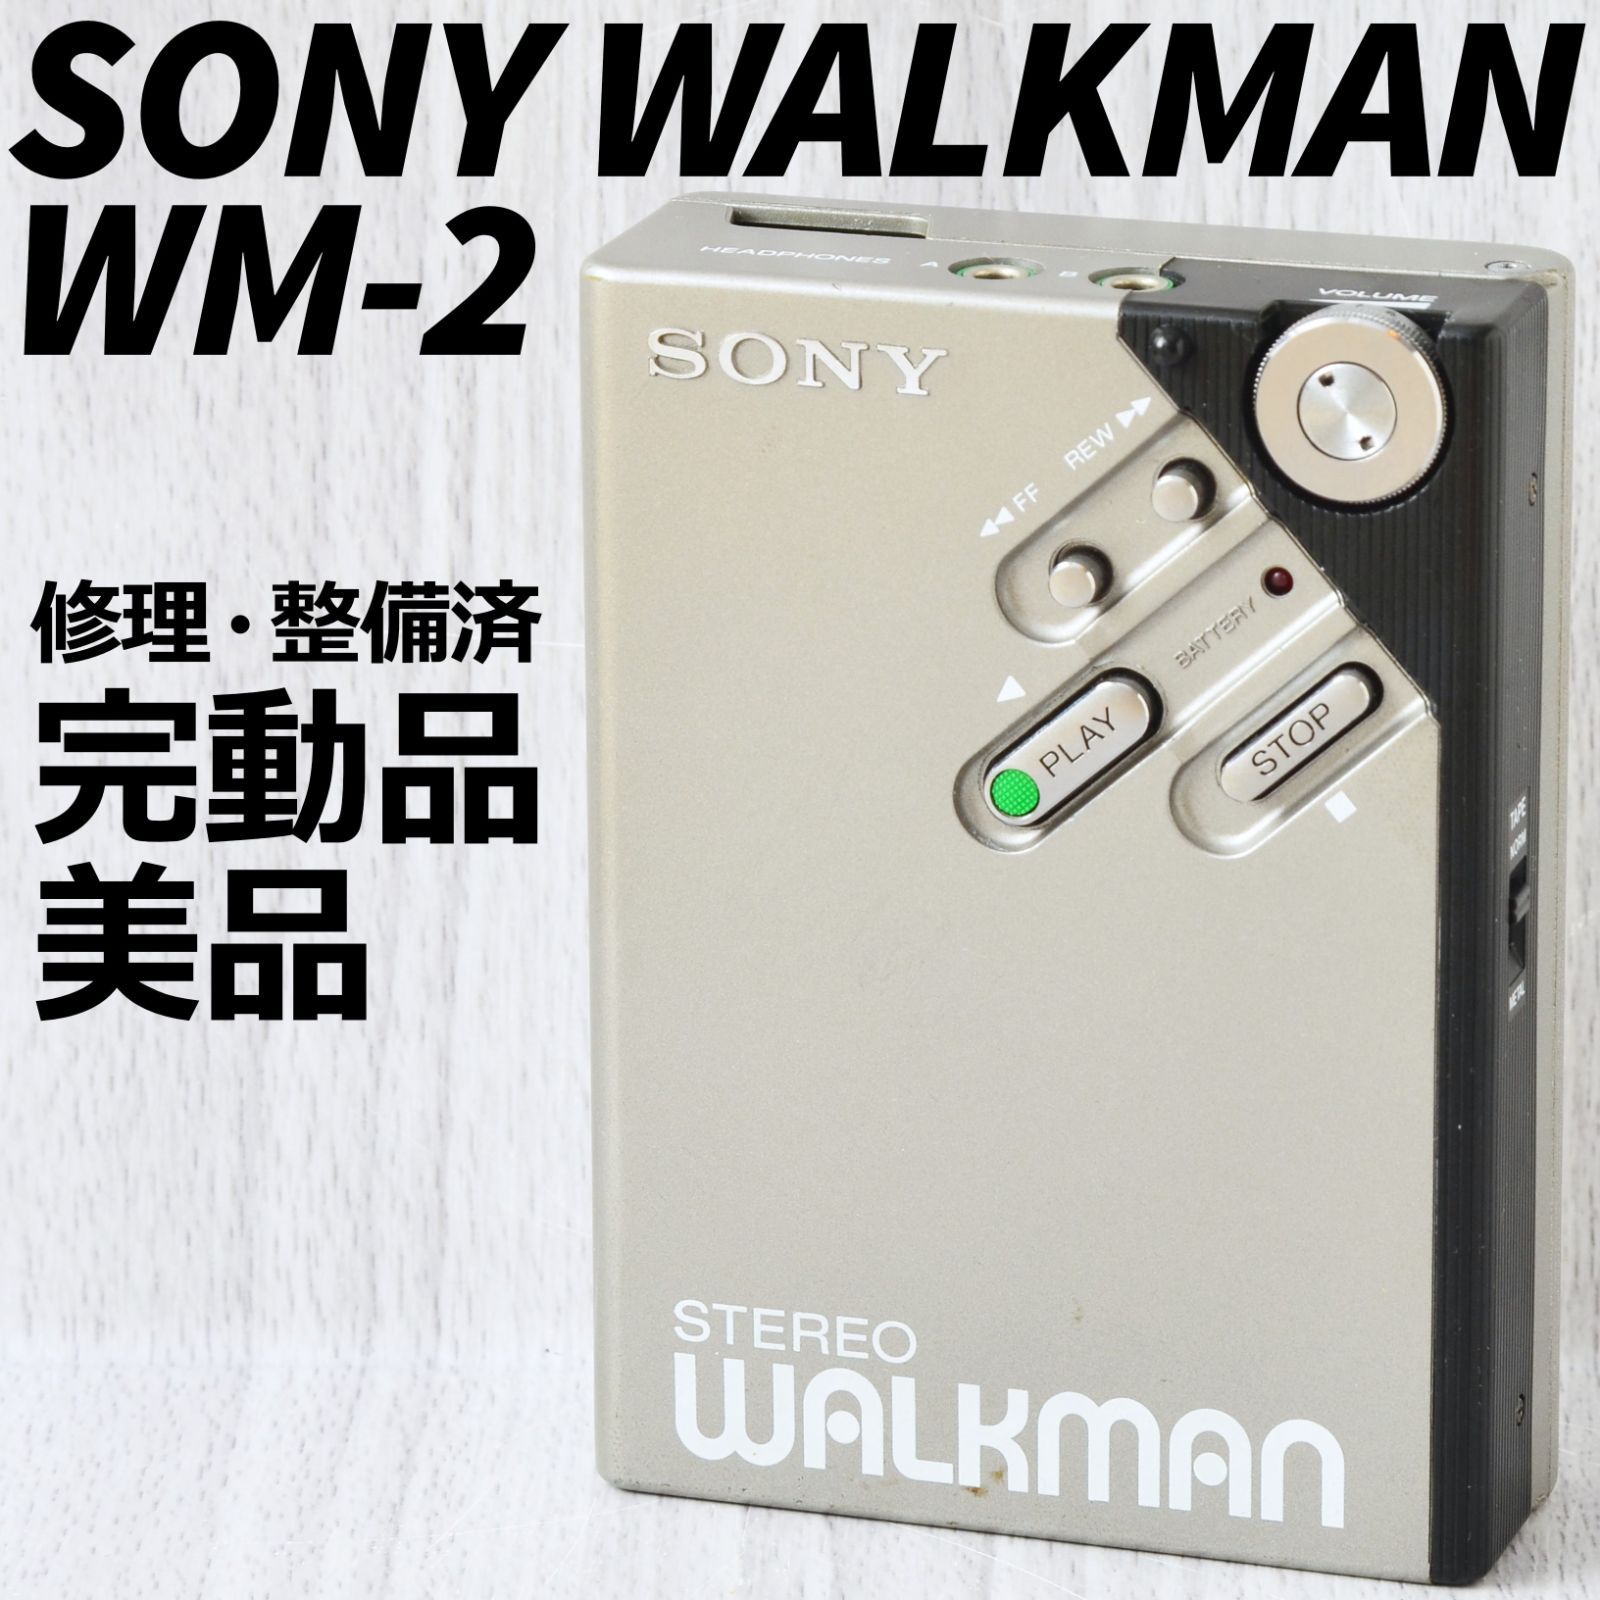 美品! SONY WALKMAN WM-2 カセットウォークマン 銀 修理・整備済